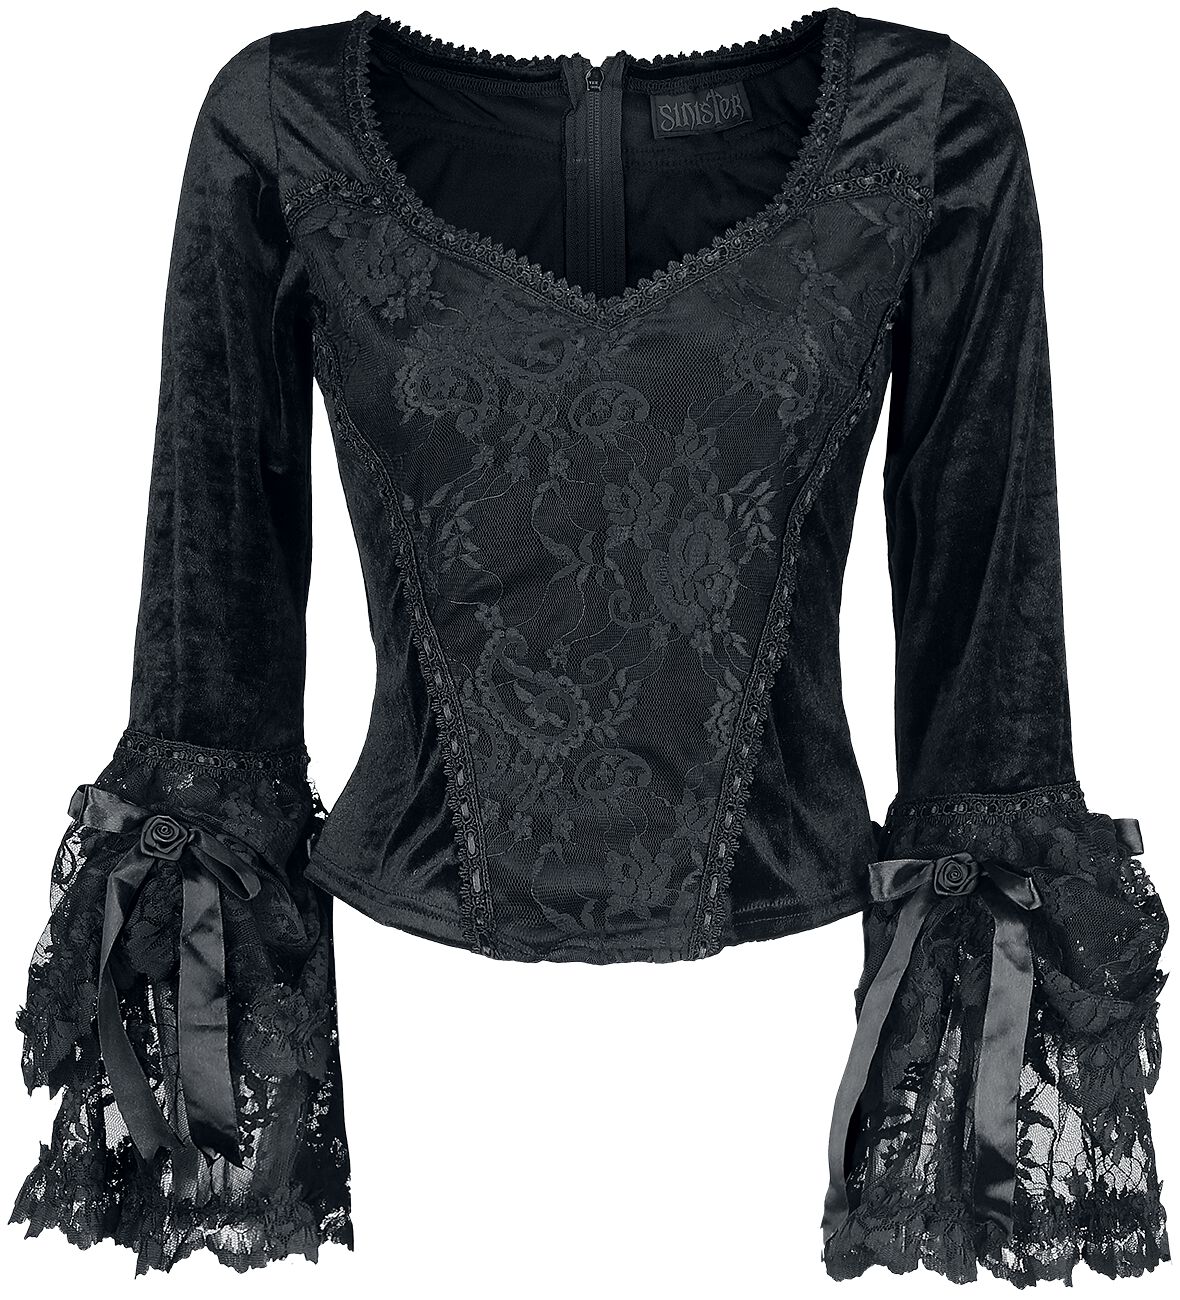 Sinister Gothic Gothic Longsleeve Long-sleeve Shirt black